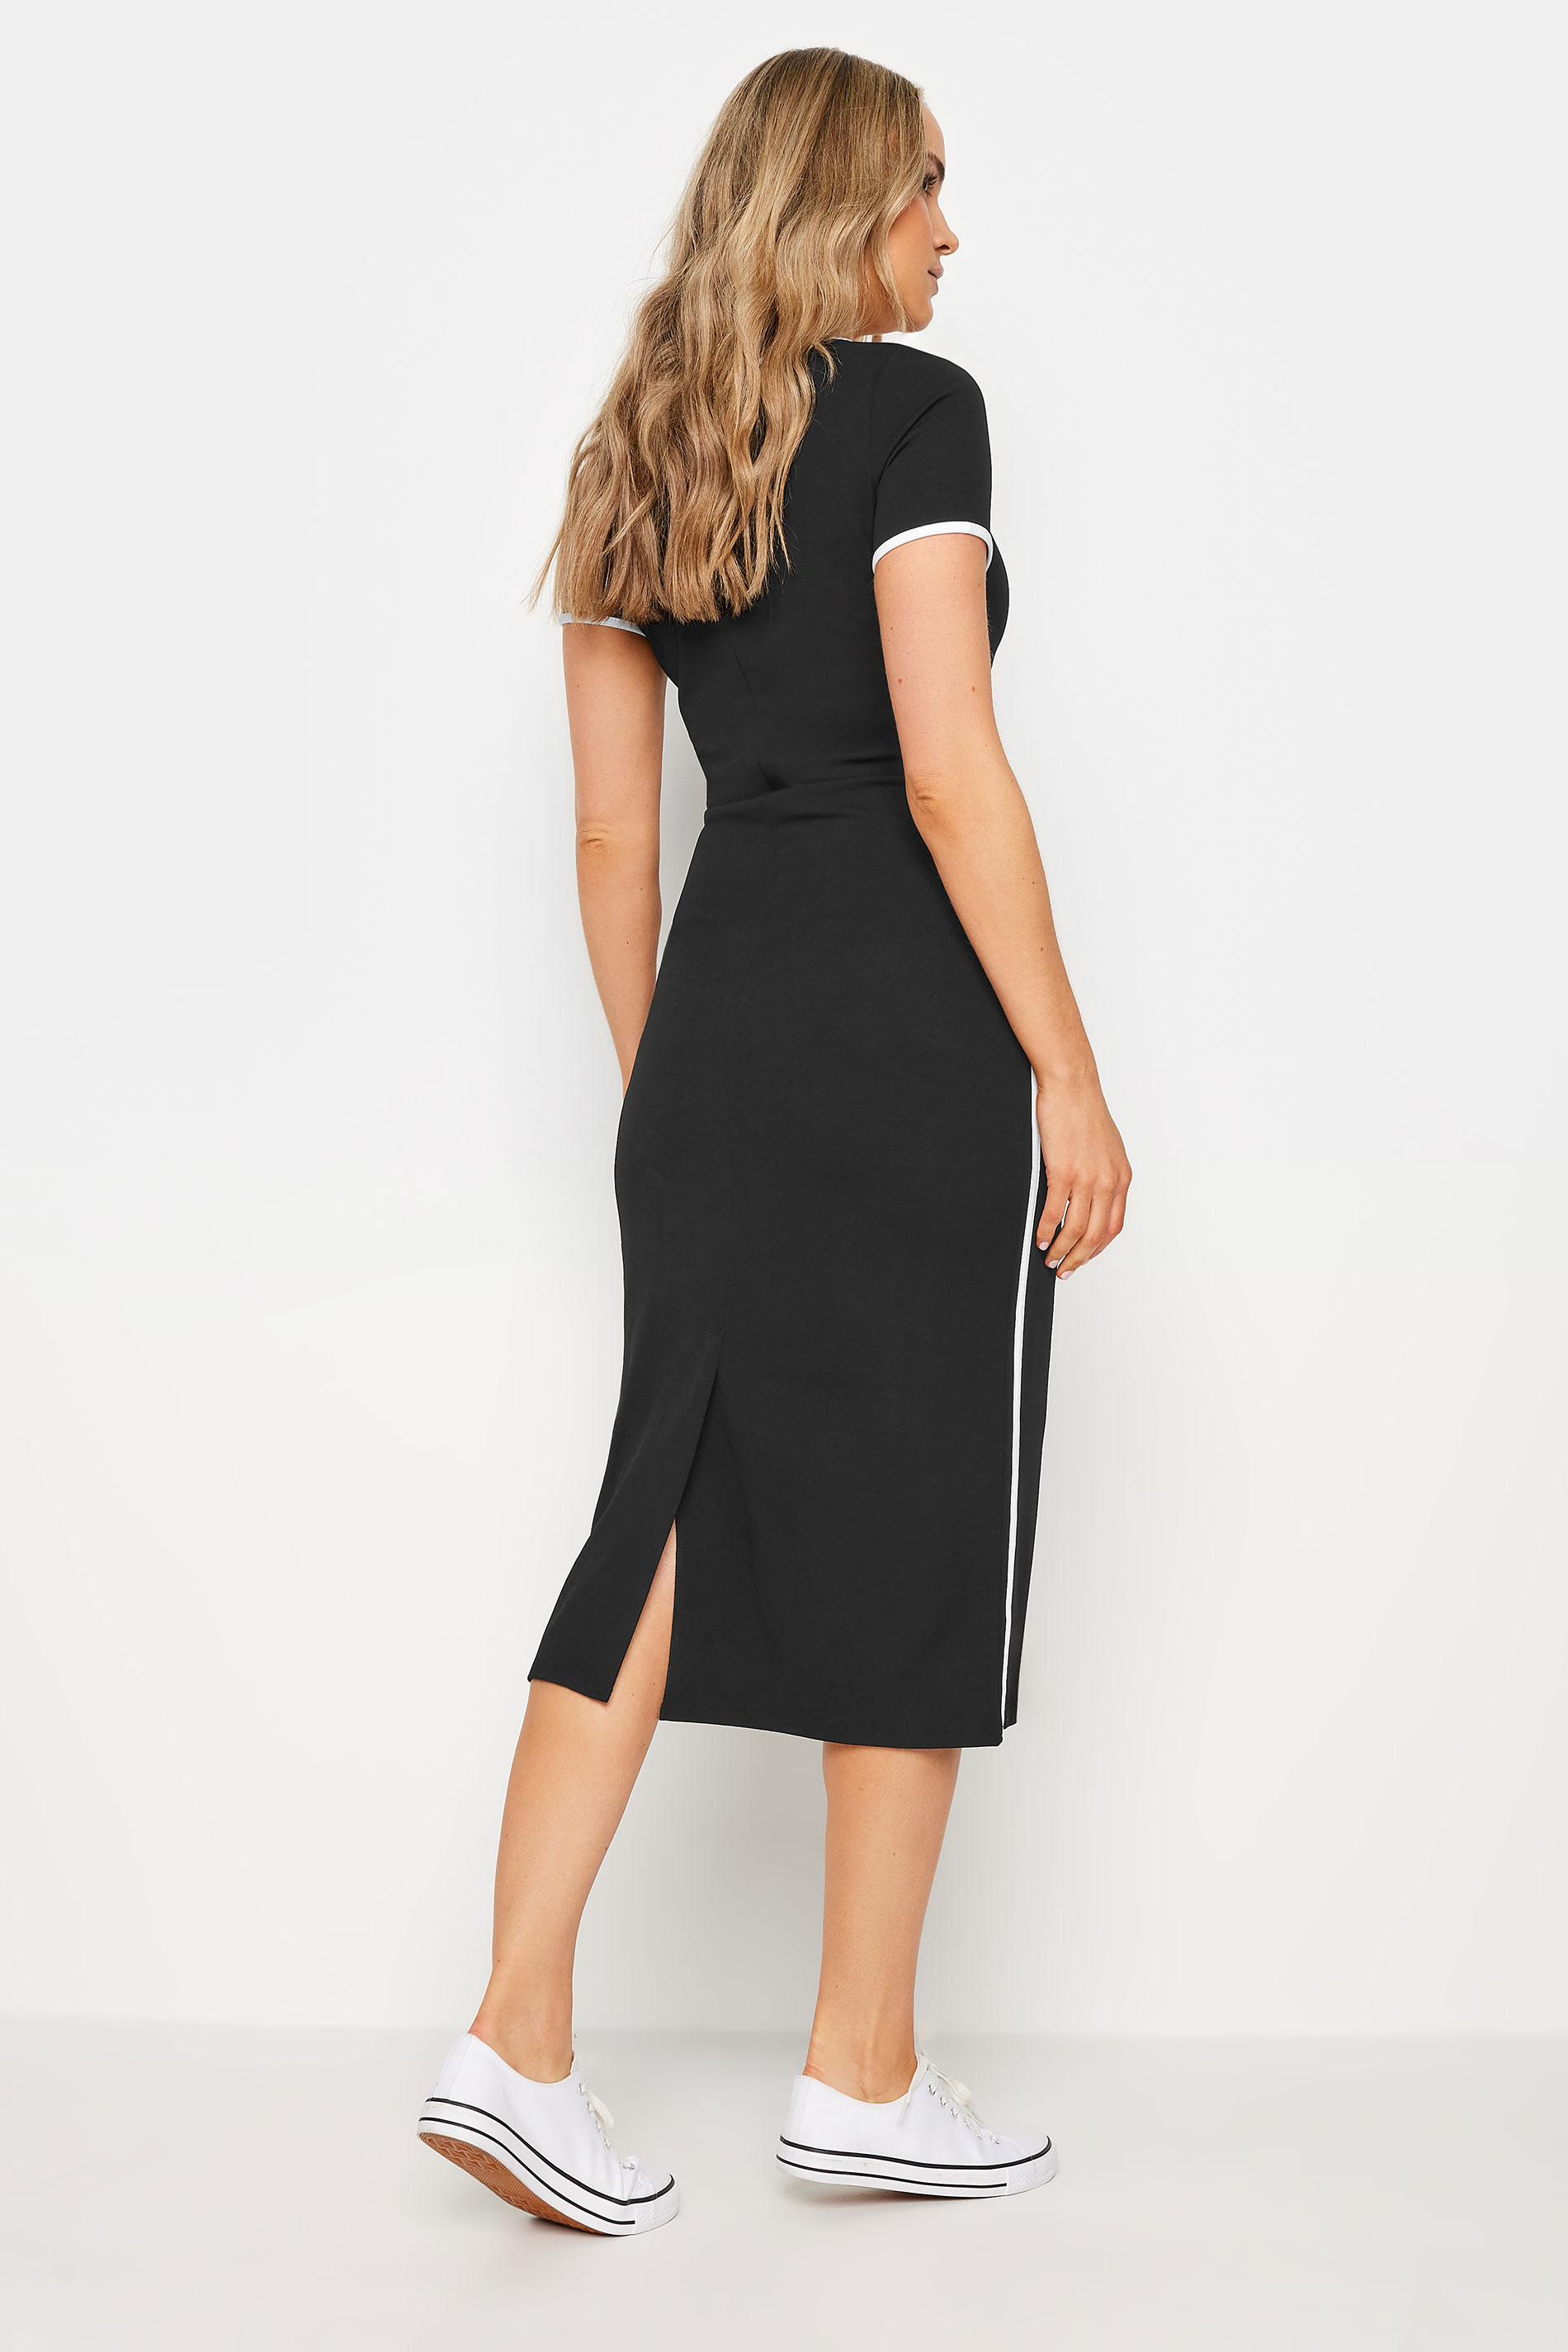 LTS Tall Women's Black Contrast Stripe Detail Midi Dress | Long Tall Sally 3